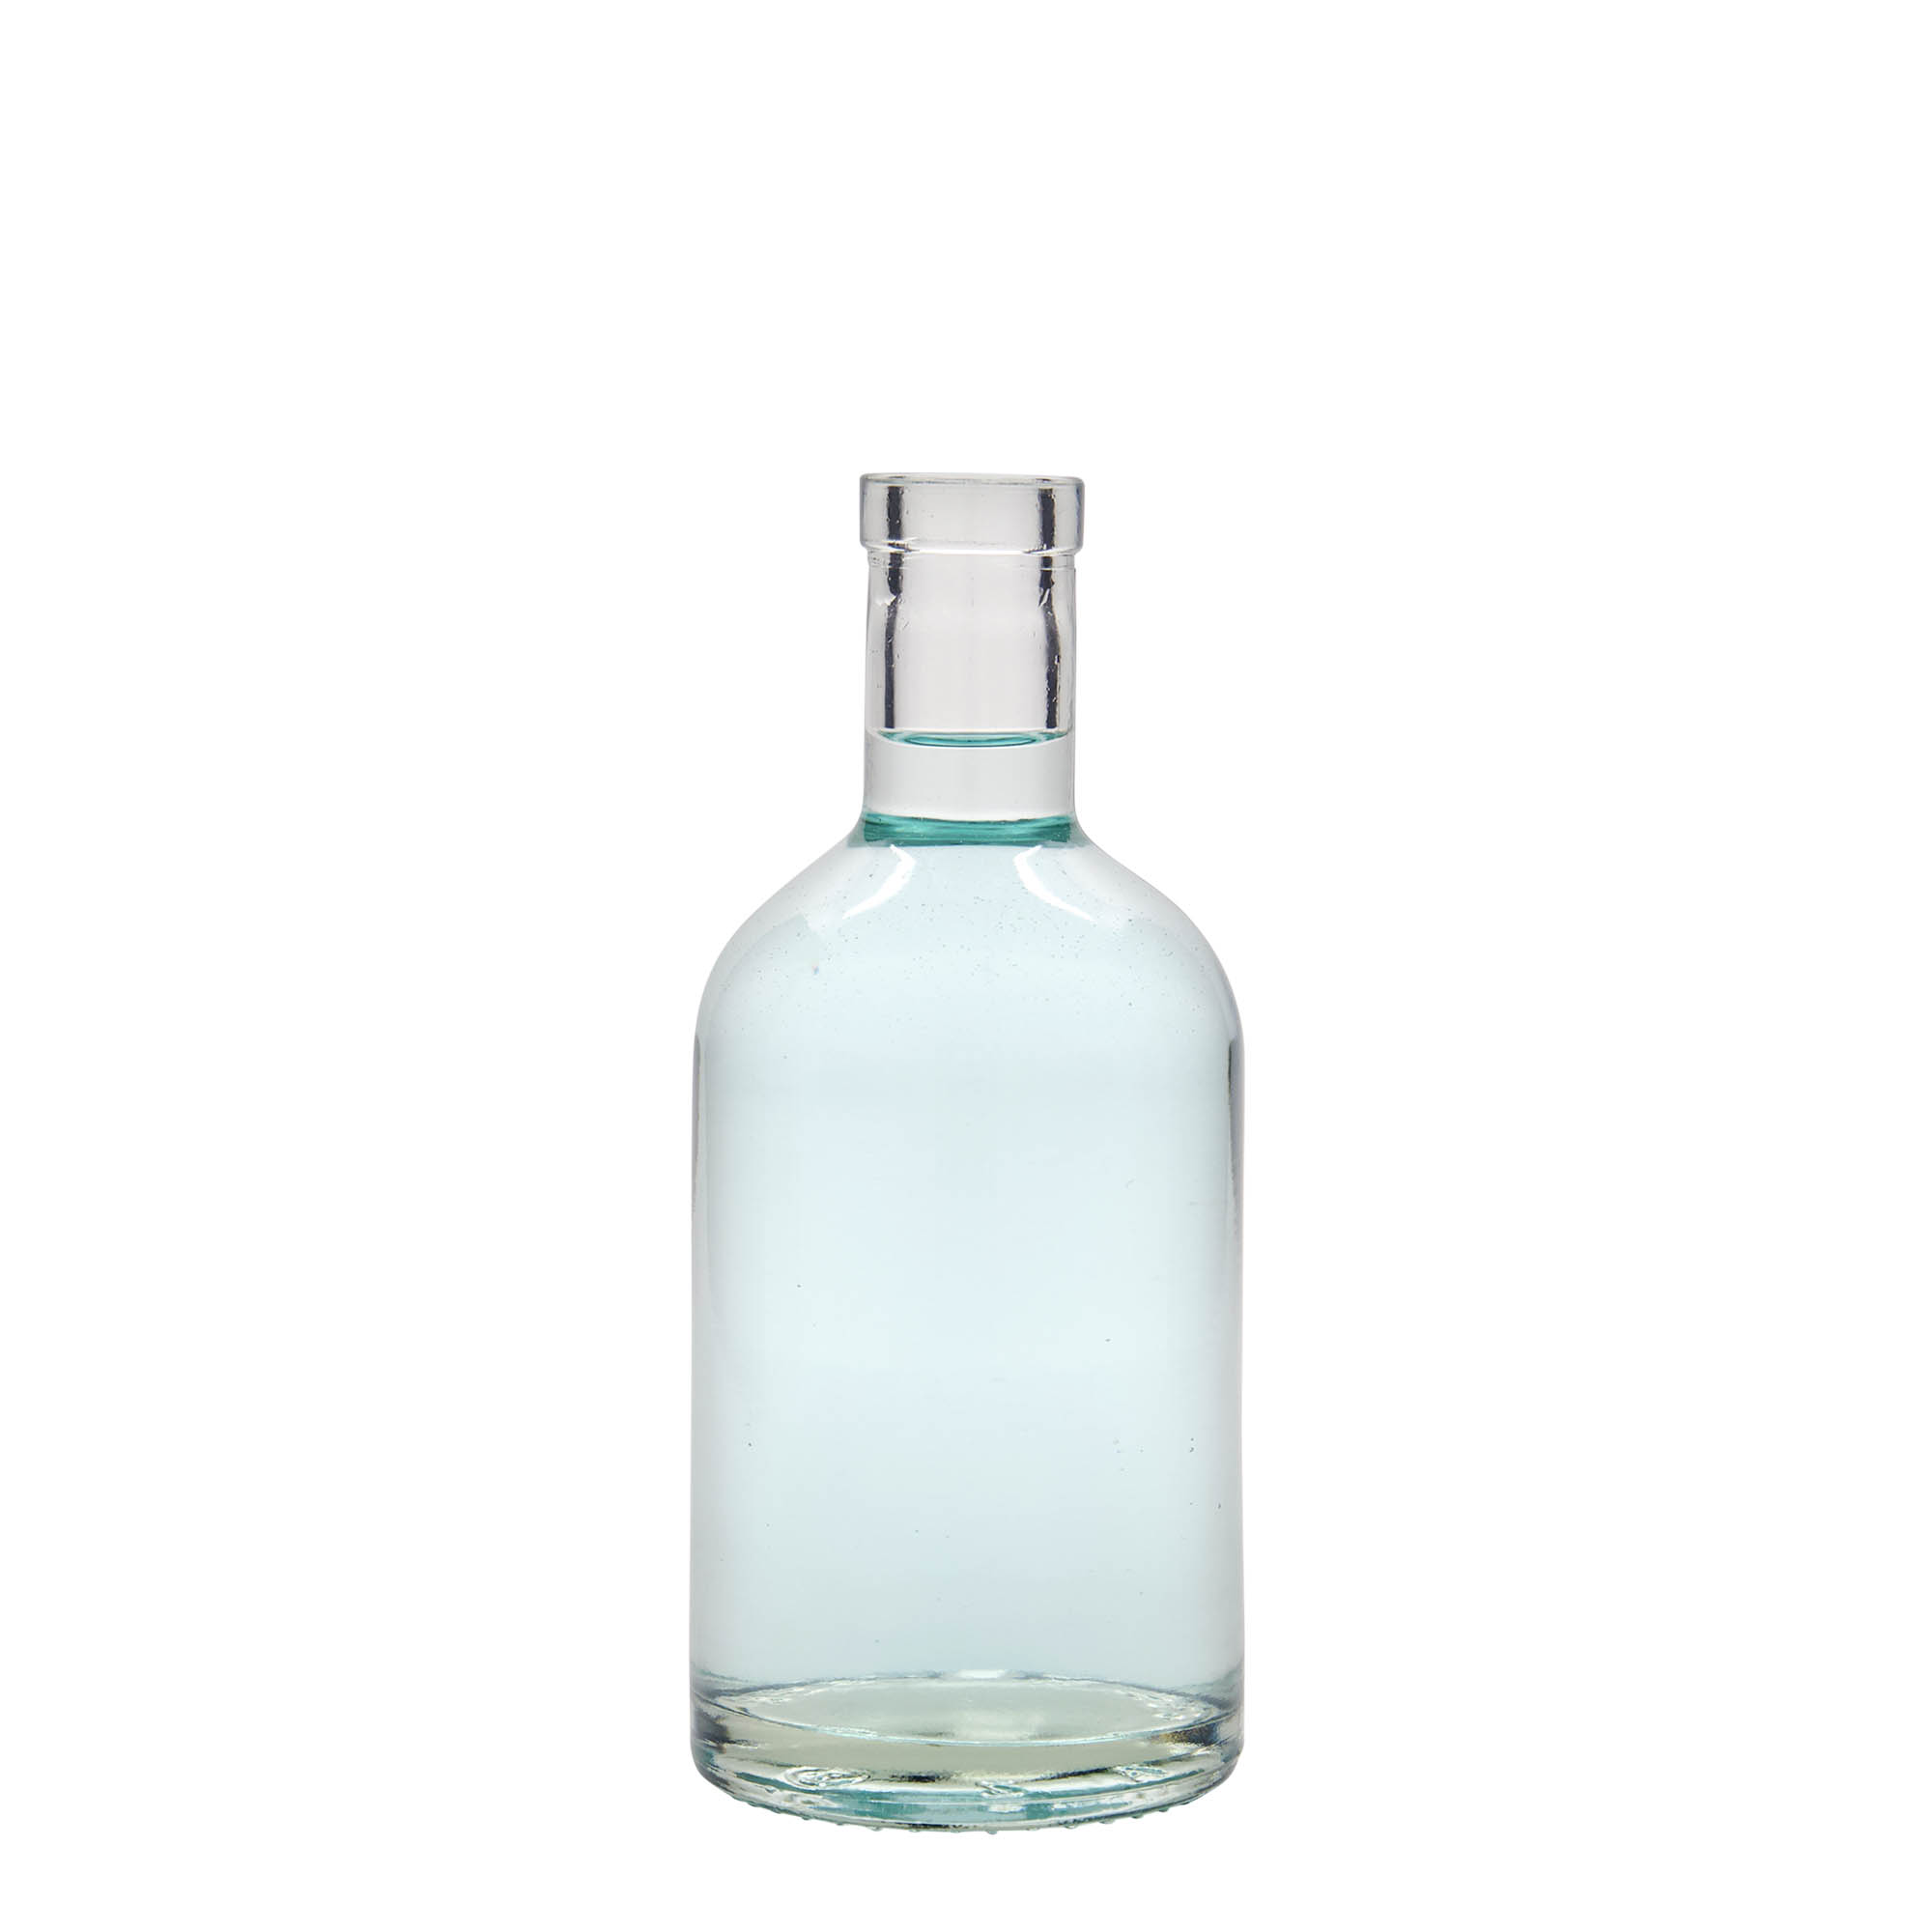 350 ml glass bottle 'First Class', closure: cork